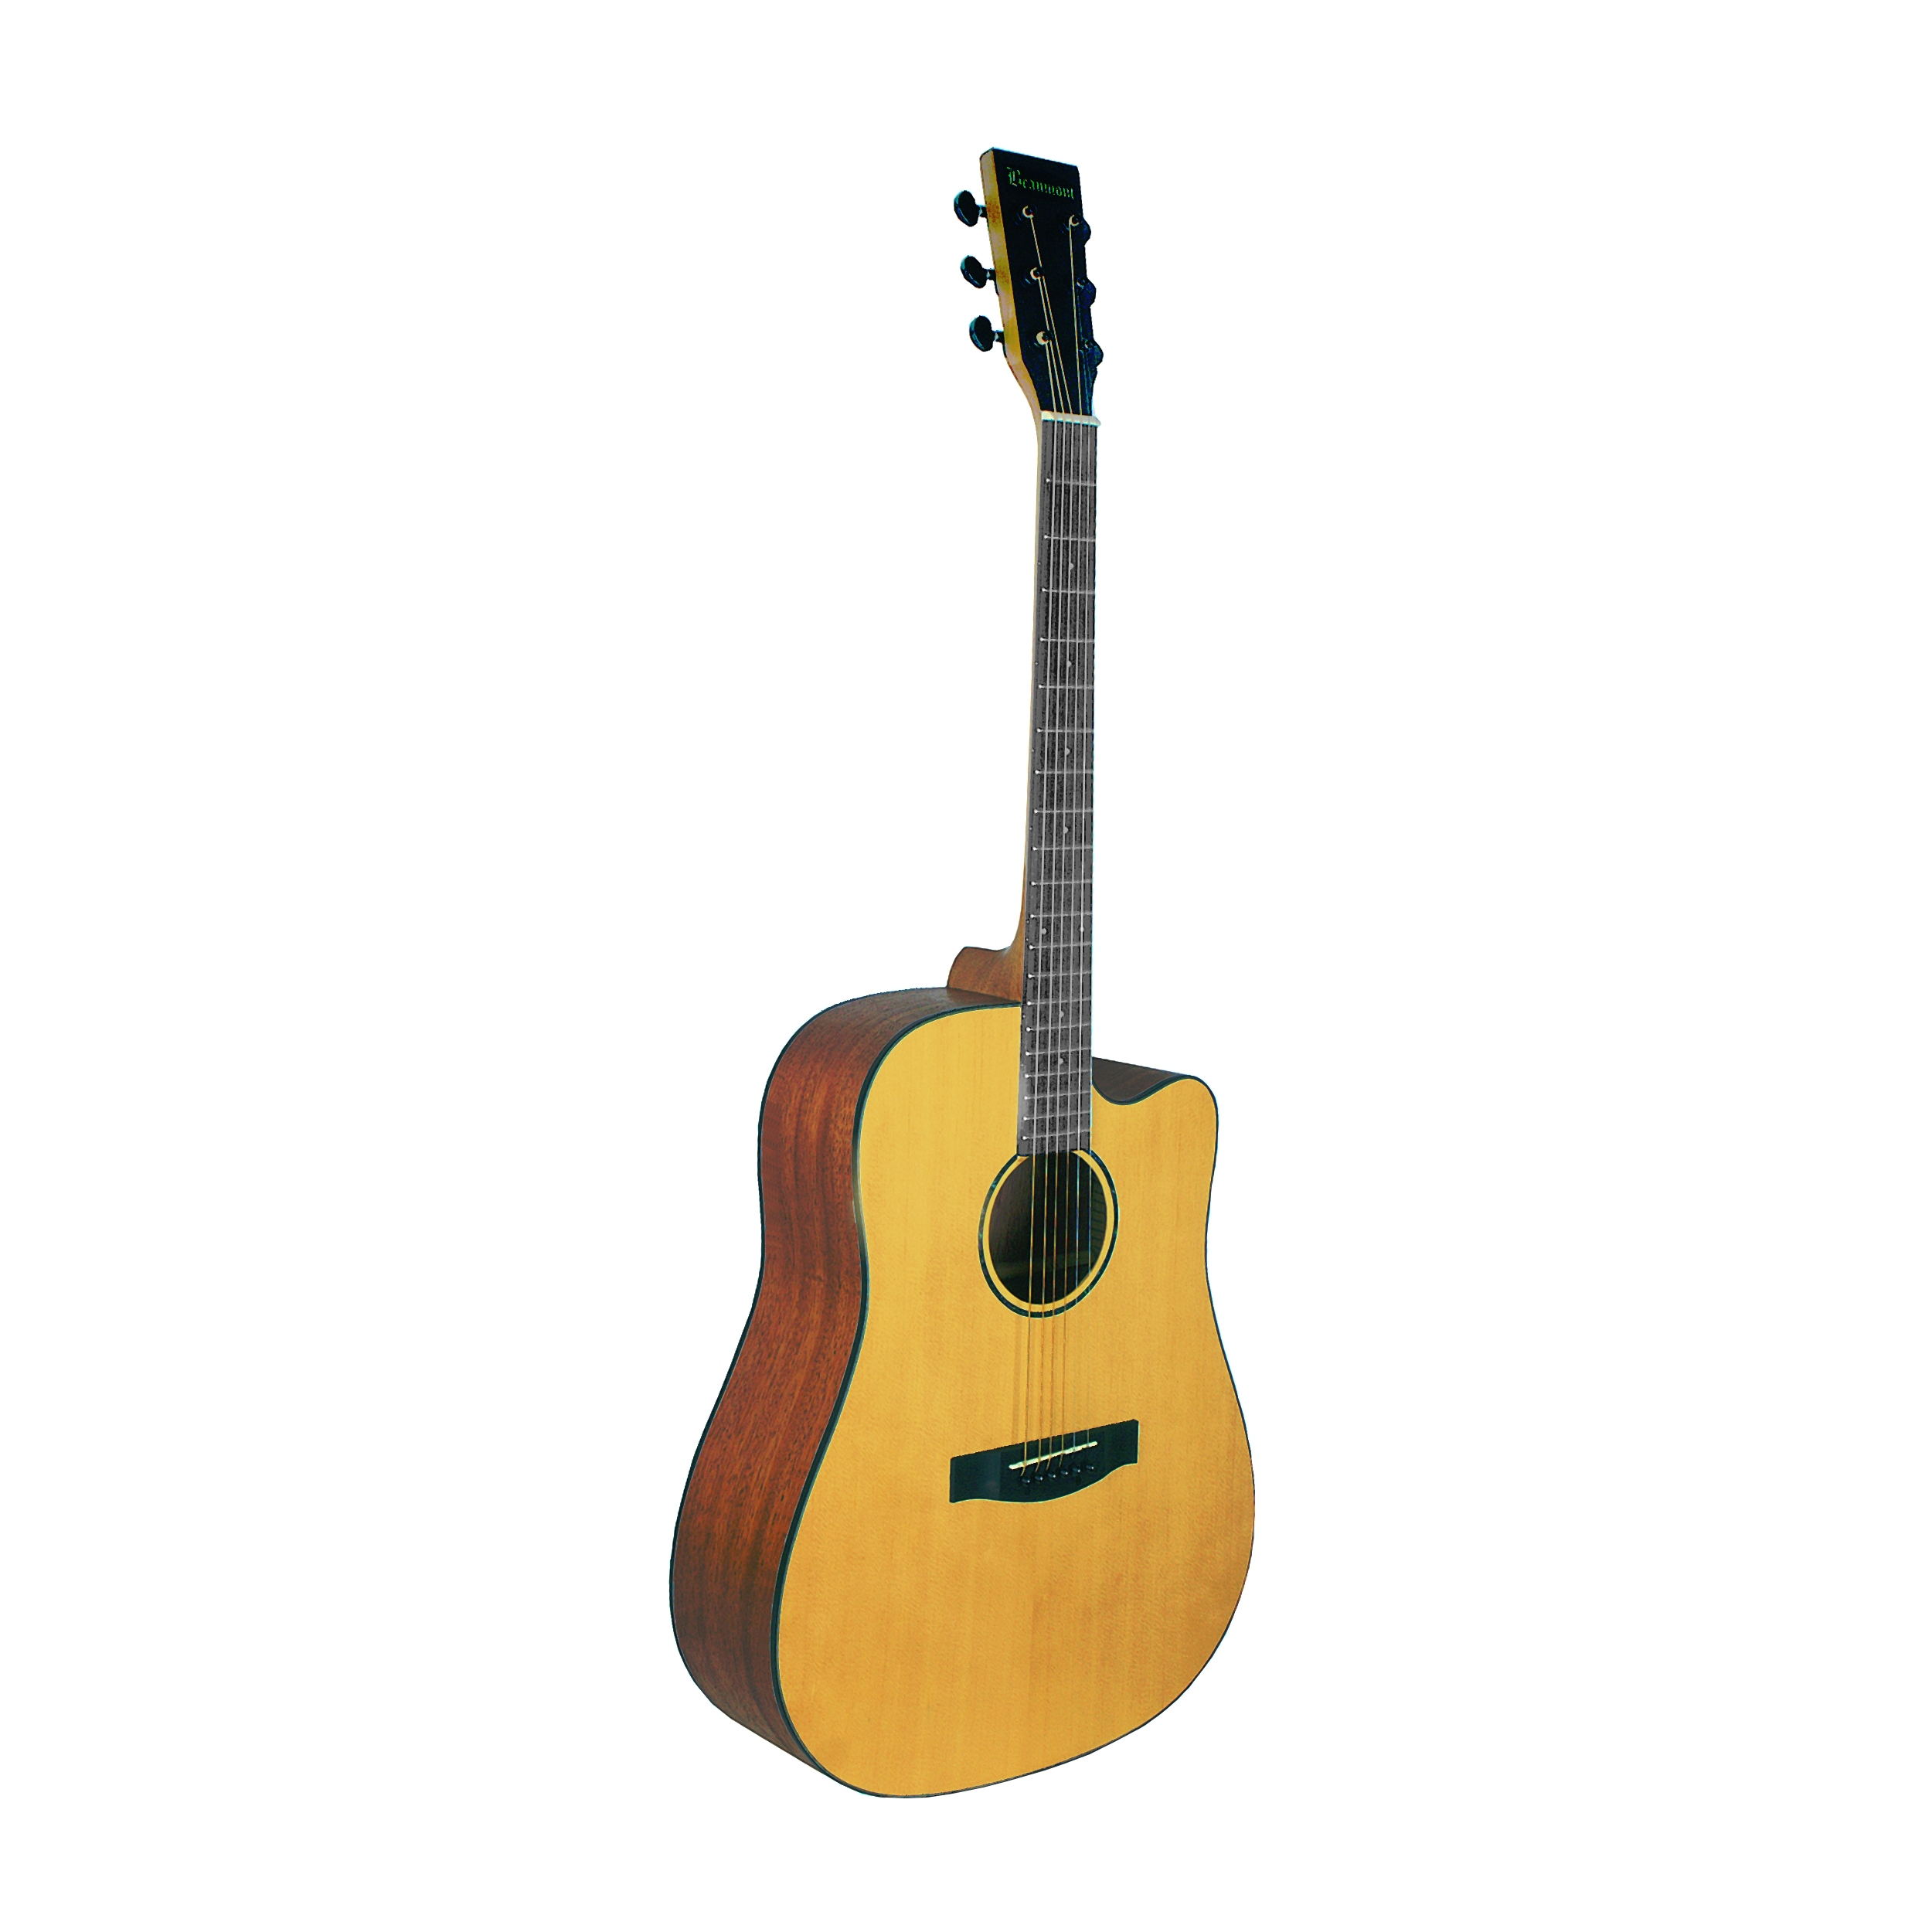 Акустические гитары Beaumont DG142C гитара акустическая дерево 97см с вырезом